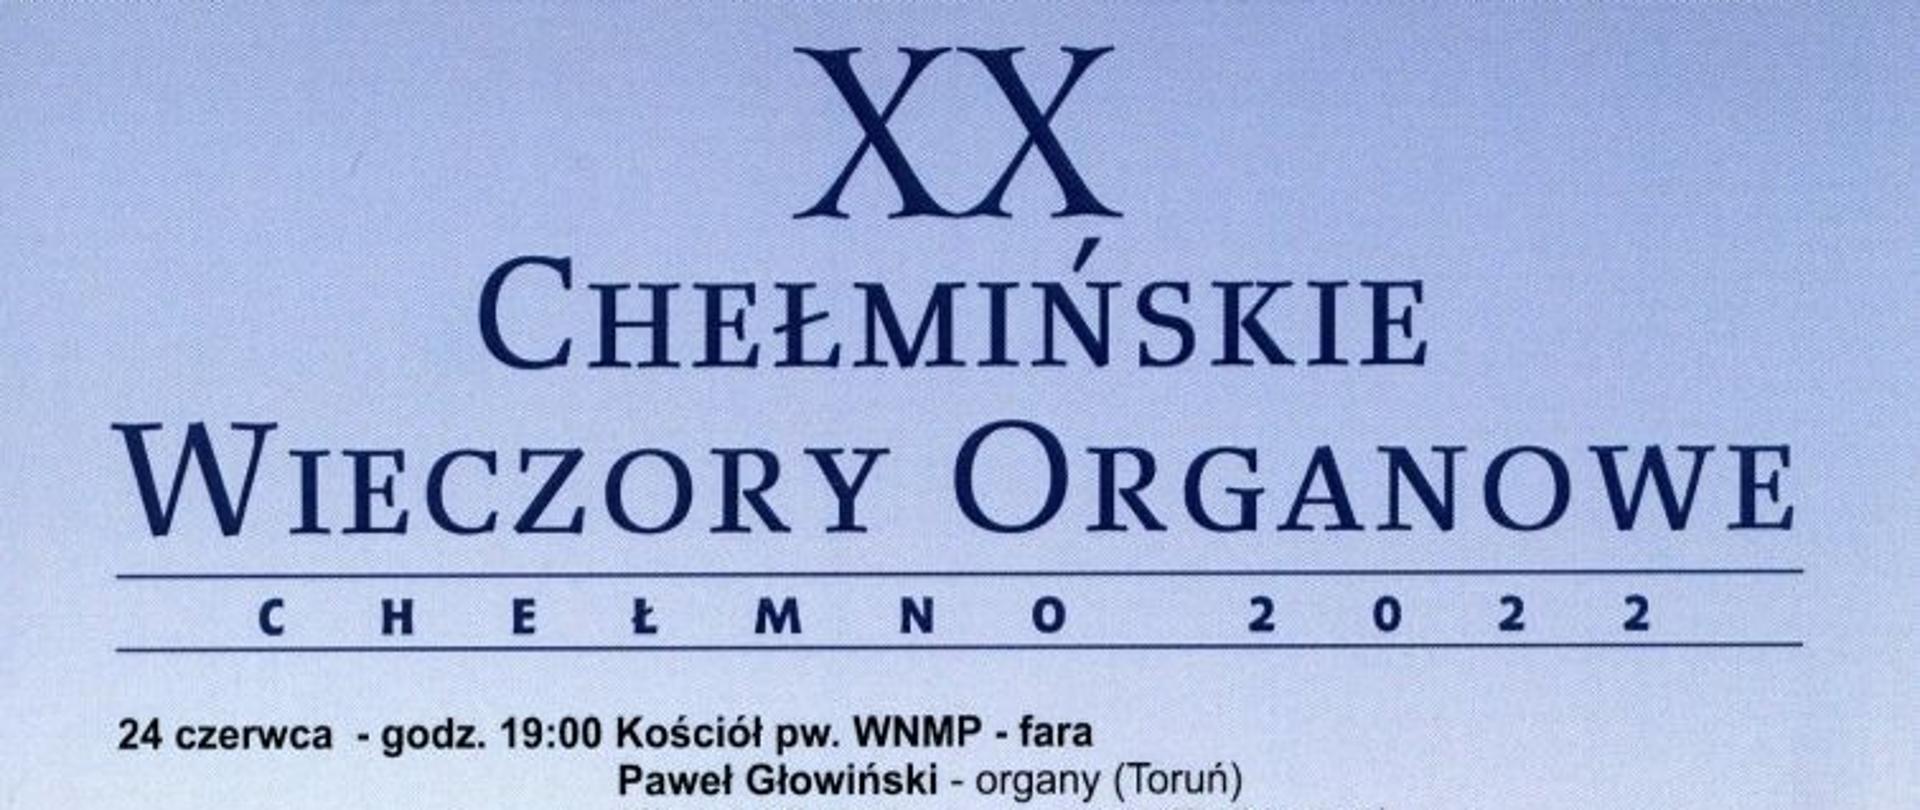 Zdjęcie przedstawiające centralnie Farę Chełmińską. Poniżej piszczałki organowe. W dolnej części lista organizatorów Chełmińskich Wieczorów Organowych.